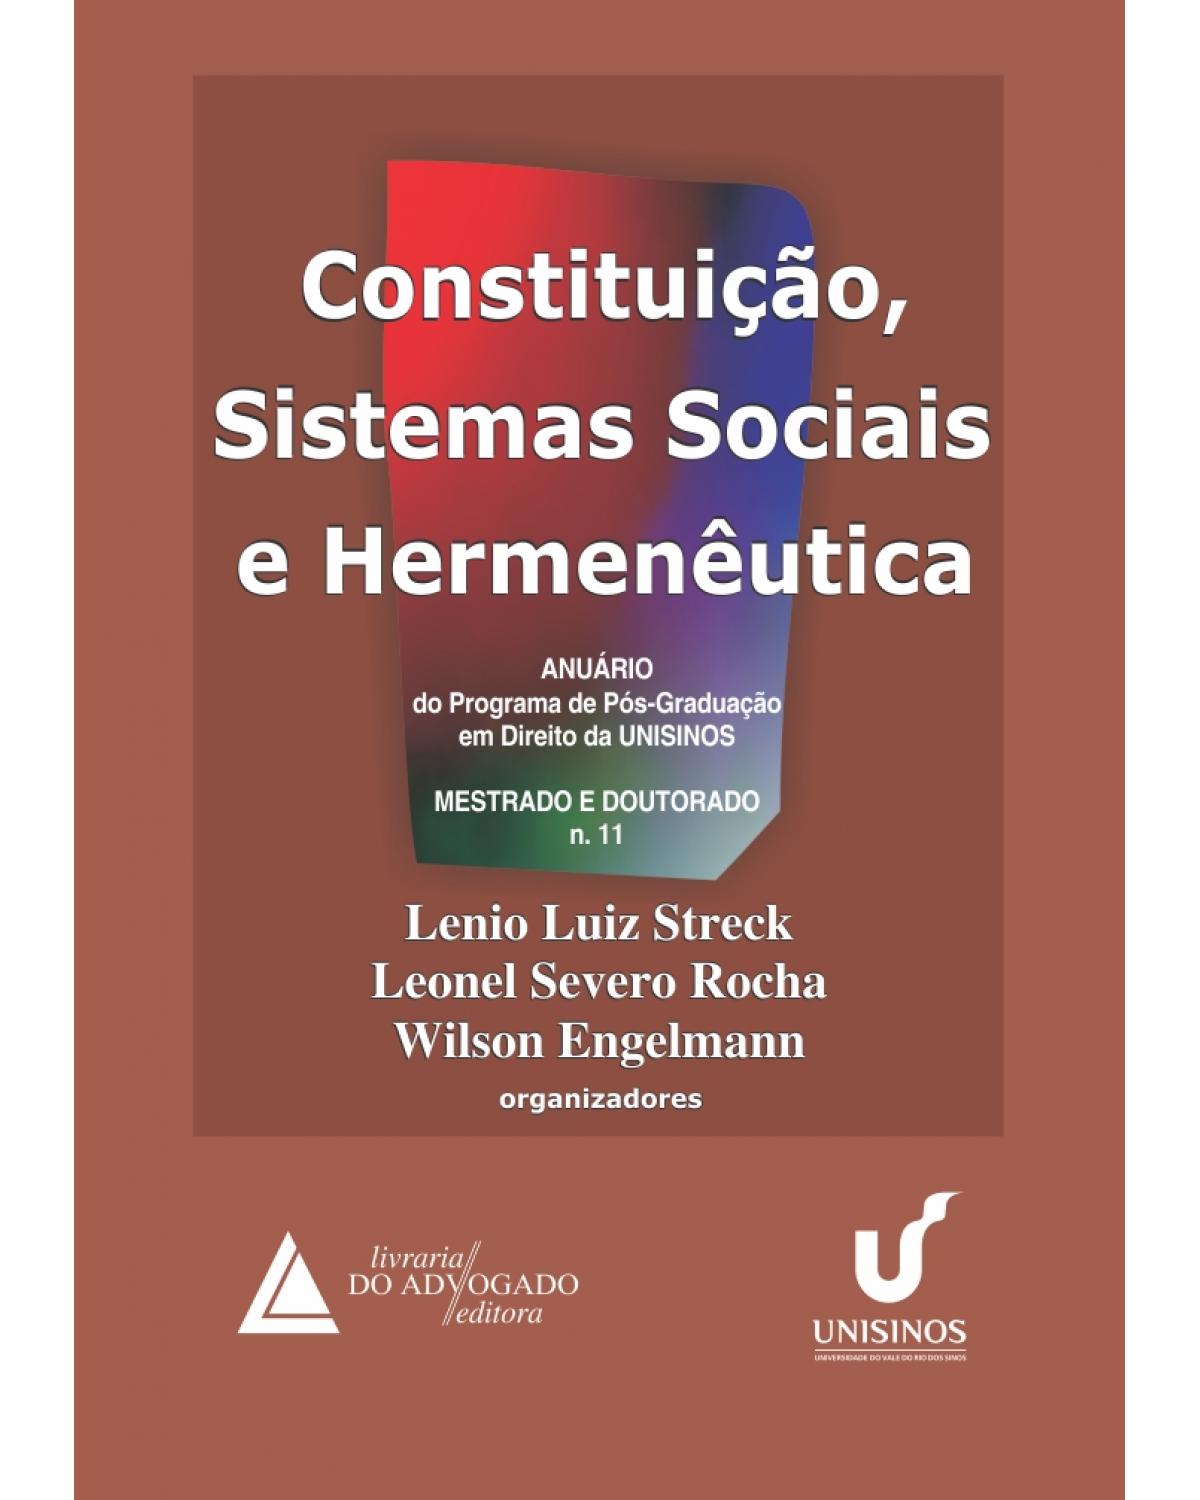 Constituição, sistemas sociais e hermenêutica - Volume 11: Anuário do programa de pós-graduação em direito da UNISINOS - 1ª Edição | 2014